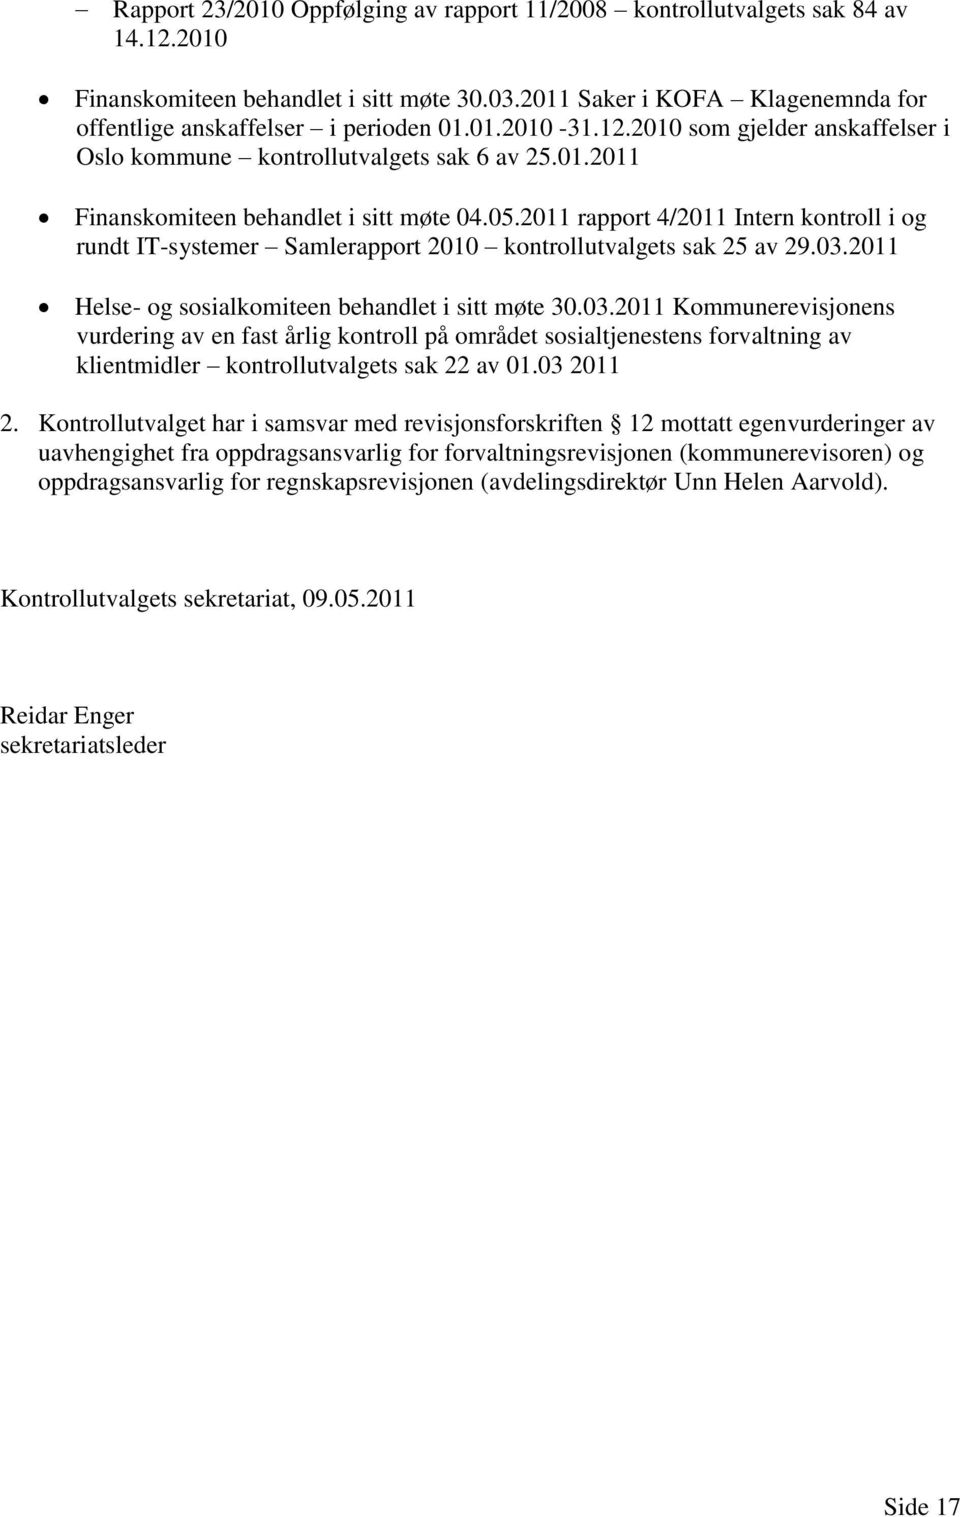 2011 rapport 4/2011 Intern kontroll i og rundt IT-systemer Samlerapport 2010 kontrollutvalgets sak 25 av 29.03.